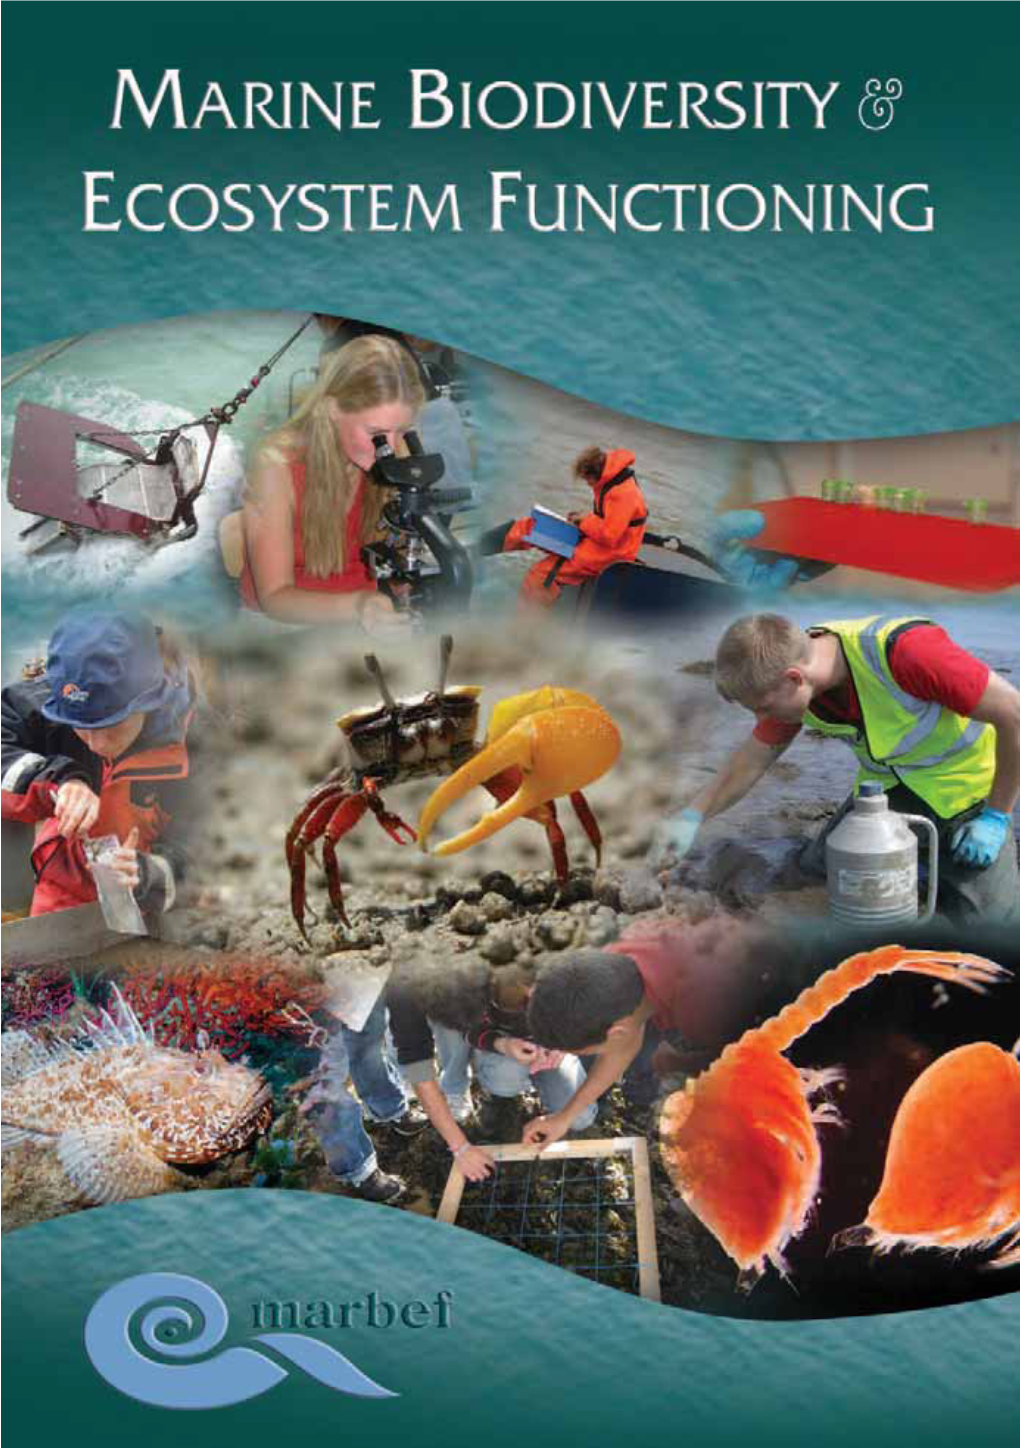 Marine Biodiversity & Ecosystem Functioning